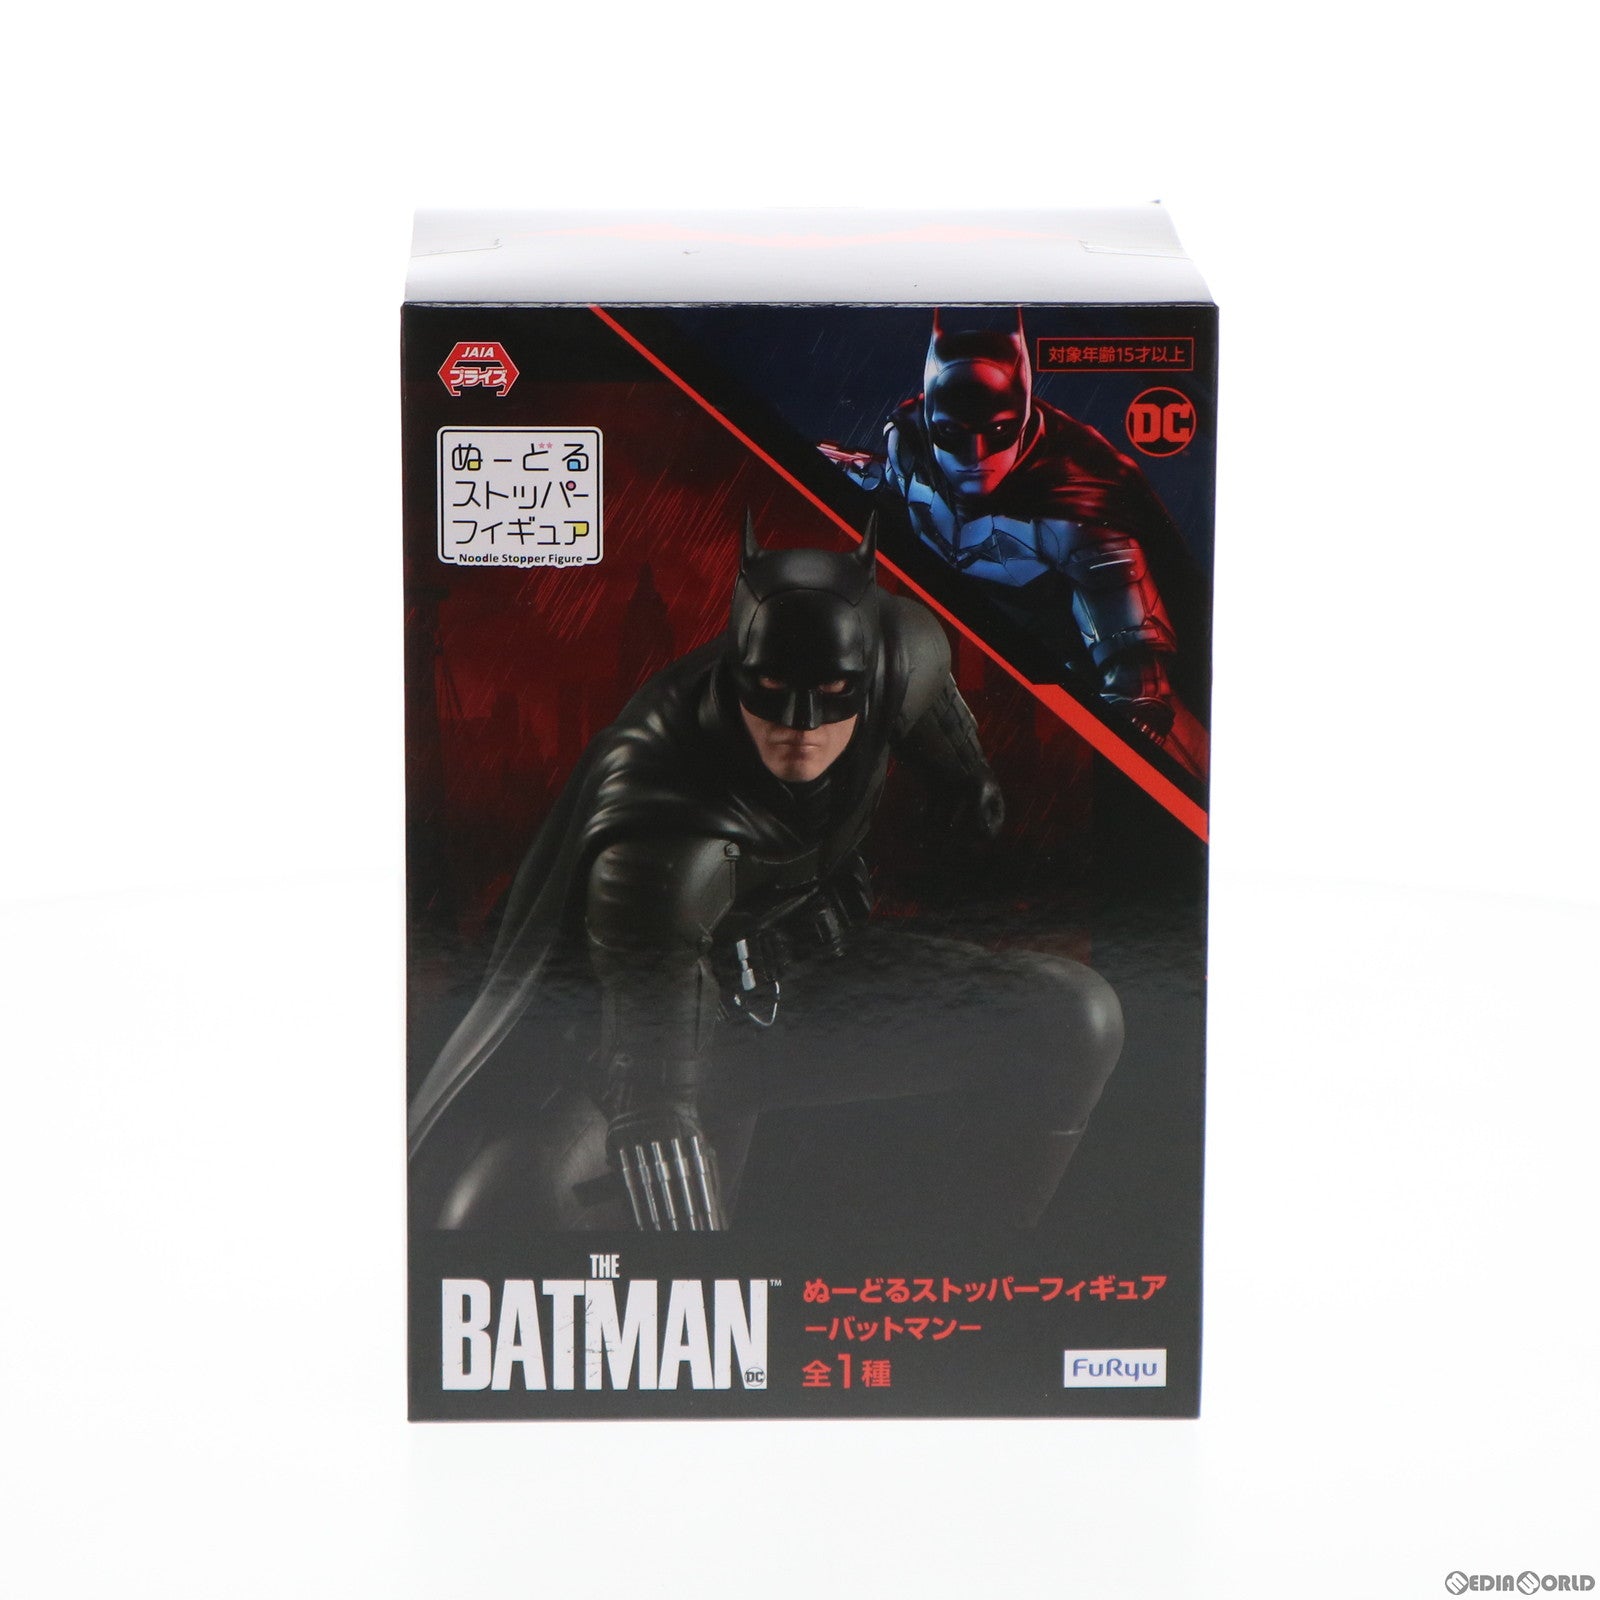 【中古即納】[FIG]バットマン THE BATMAN-ザ・バットマン- ぬーどるストッパーフィギュア プライズ(AMU-PRZ13017) フリュー(20220320)